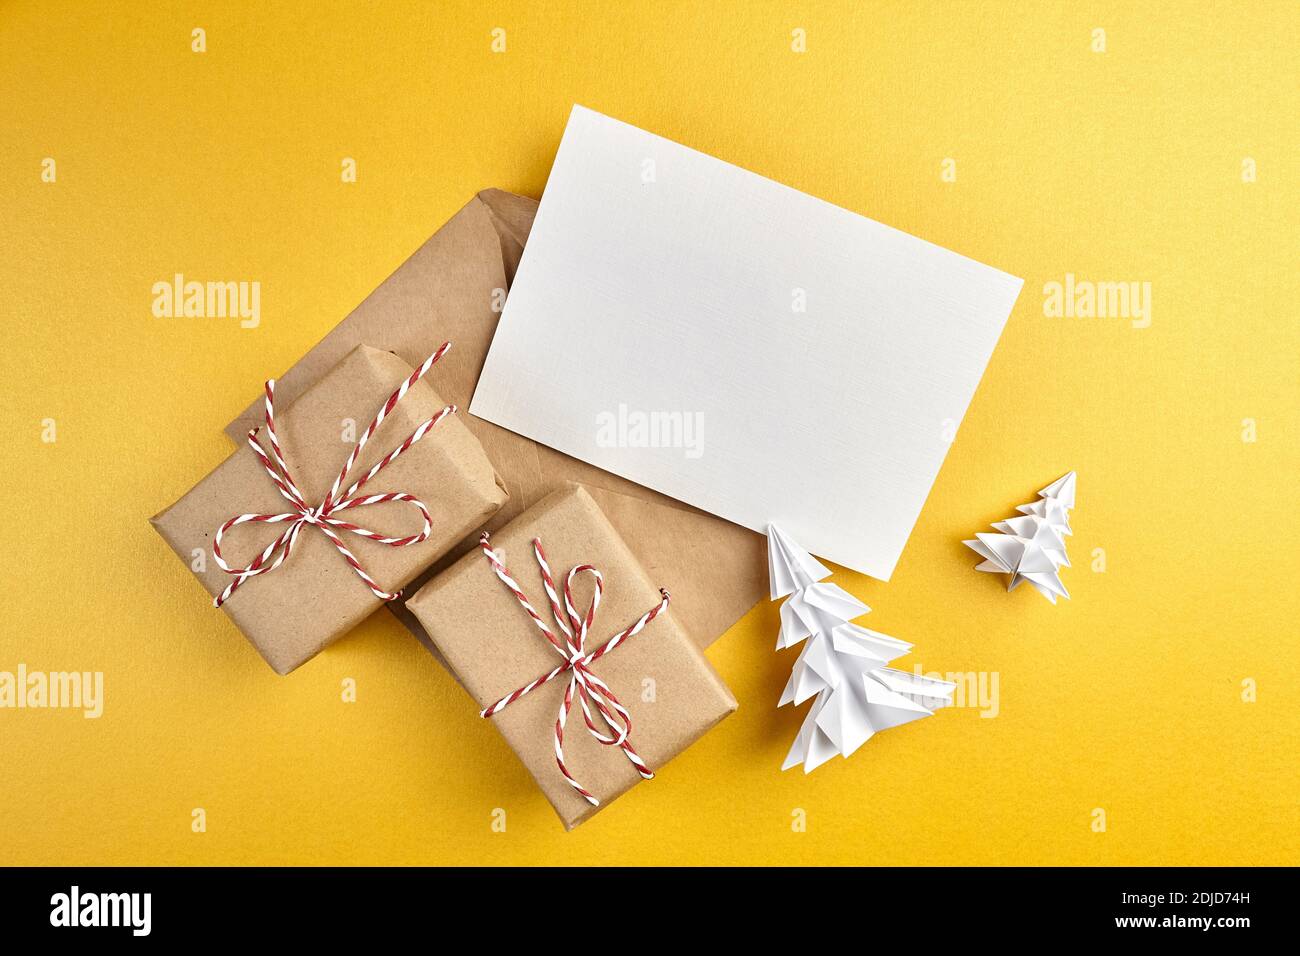 Grußkarte Mockup, weiße leere Wish Card mit Bastelpapierumschlag und Geschenkschachteln mit weißem Papier Fichte Baum auf goldenem Hintergrund. Leere Begrüßung Stockfoto